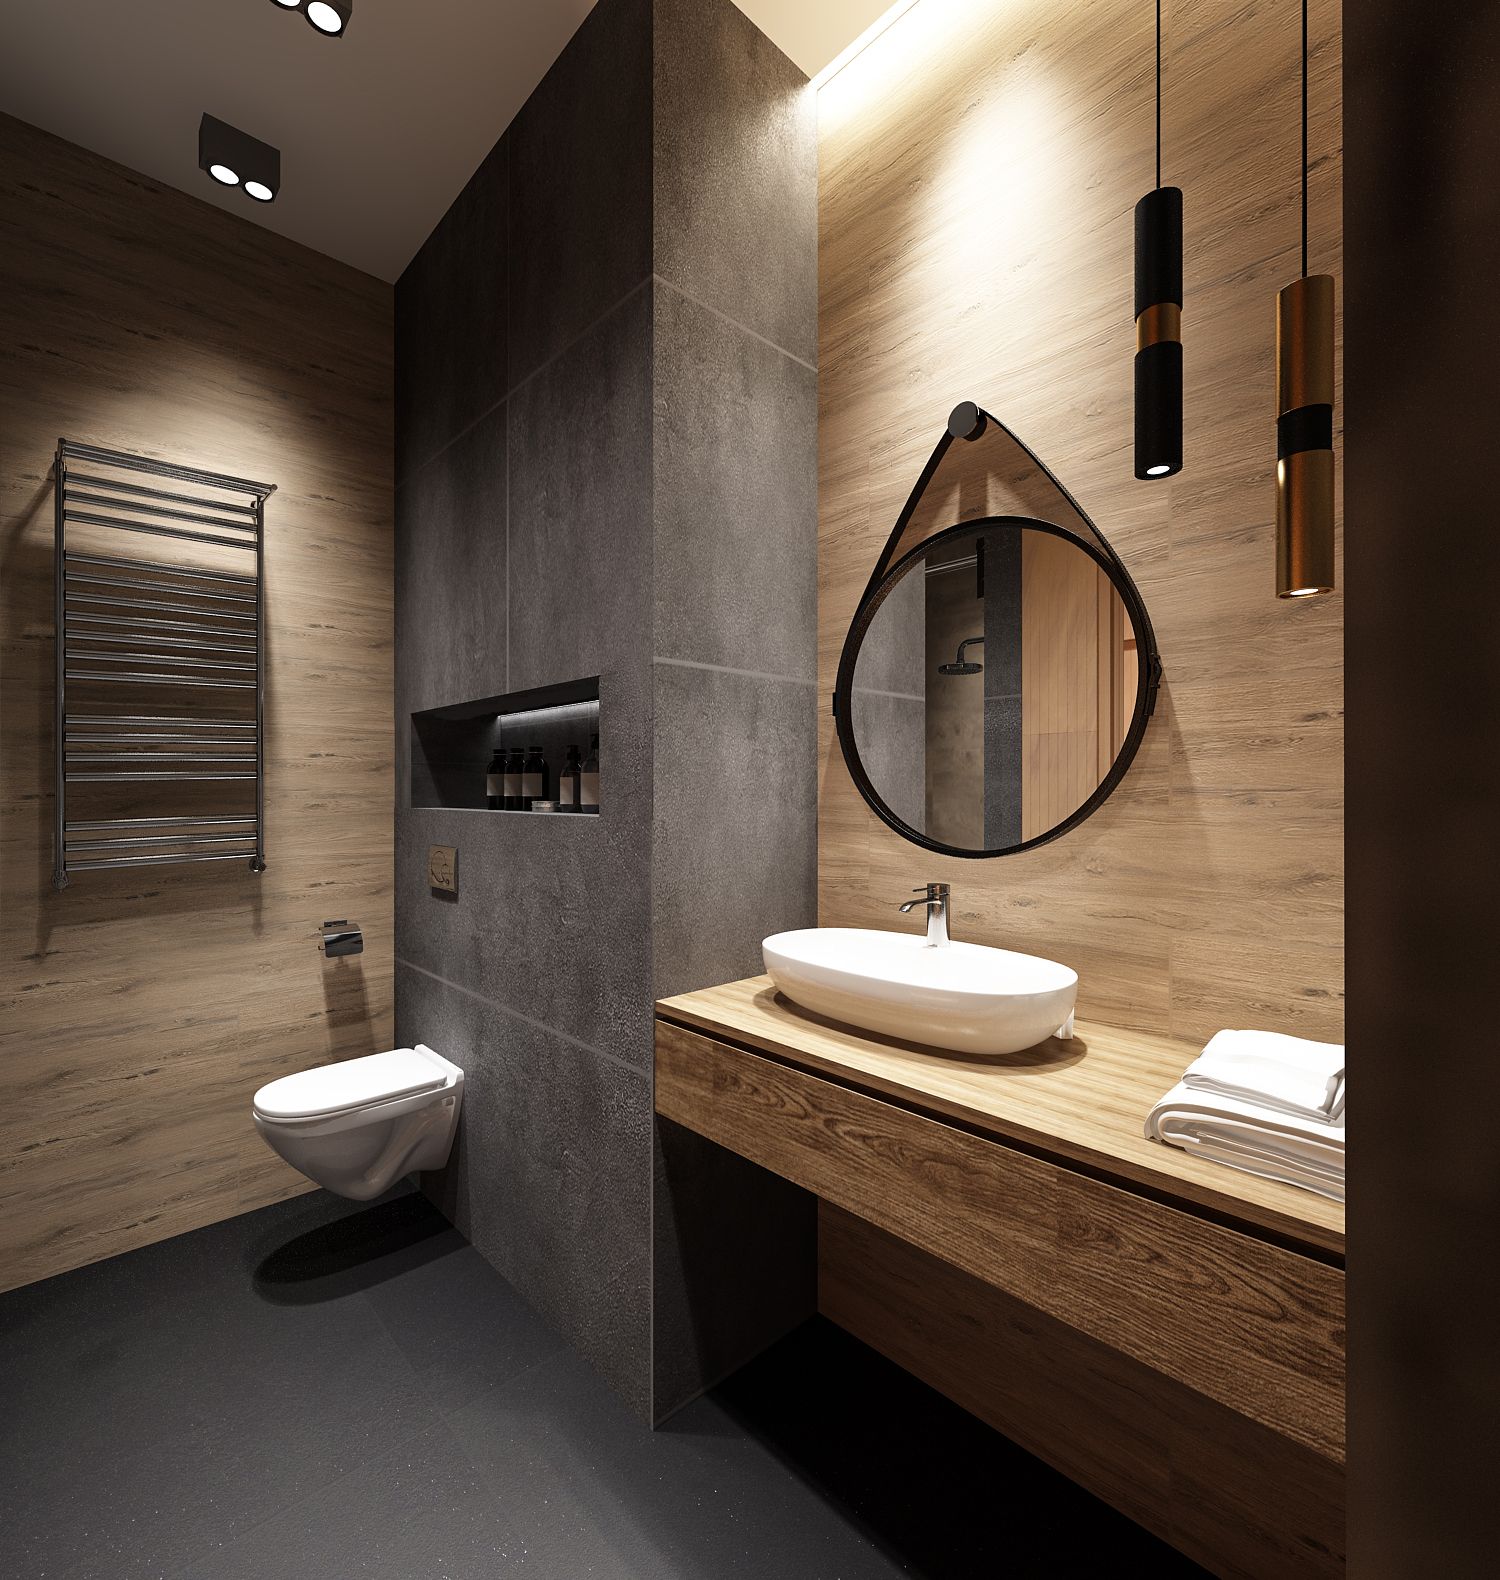 Фото № 4: Современный дизайн ванной комнаты